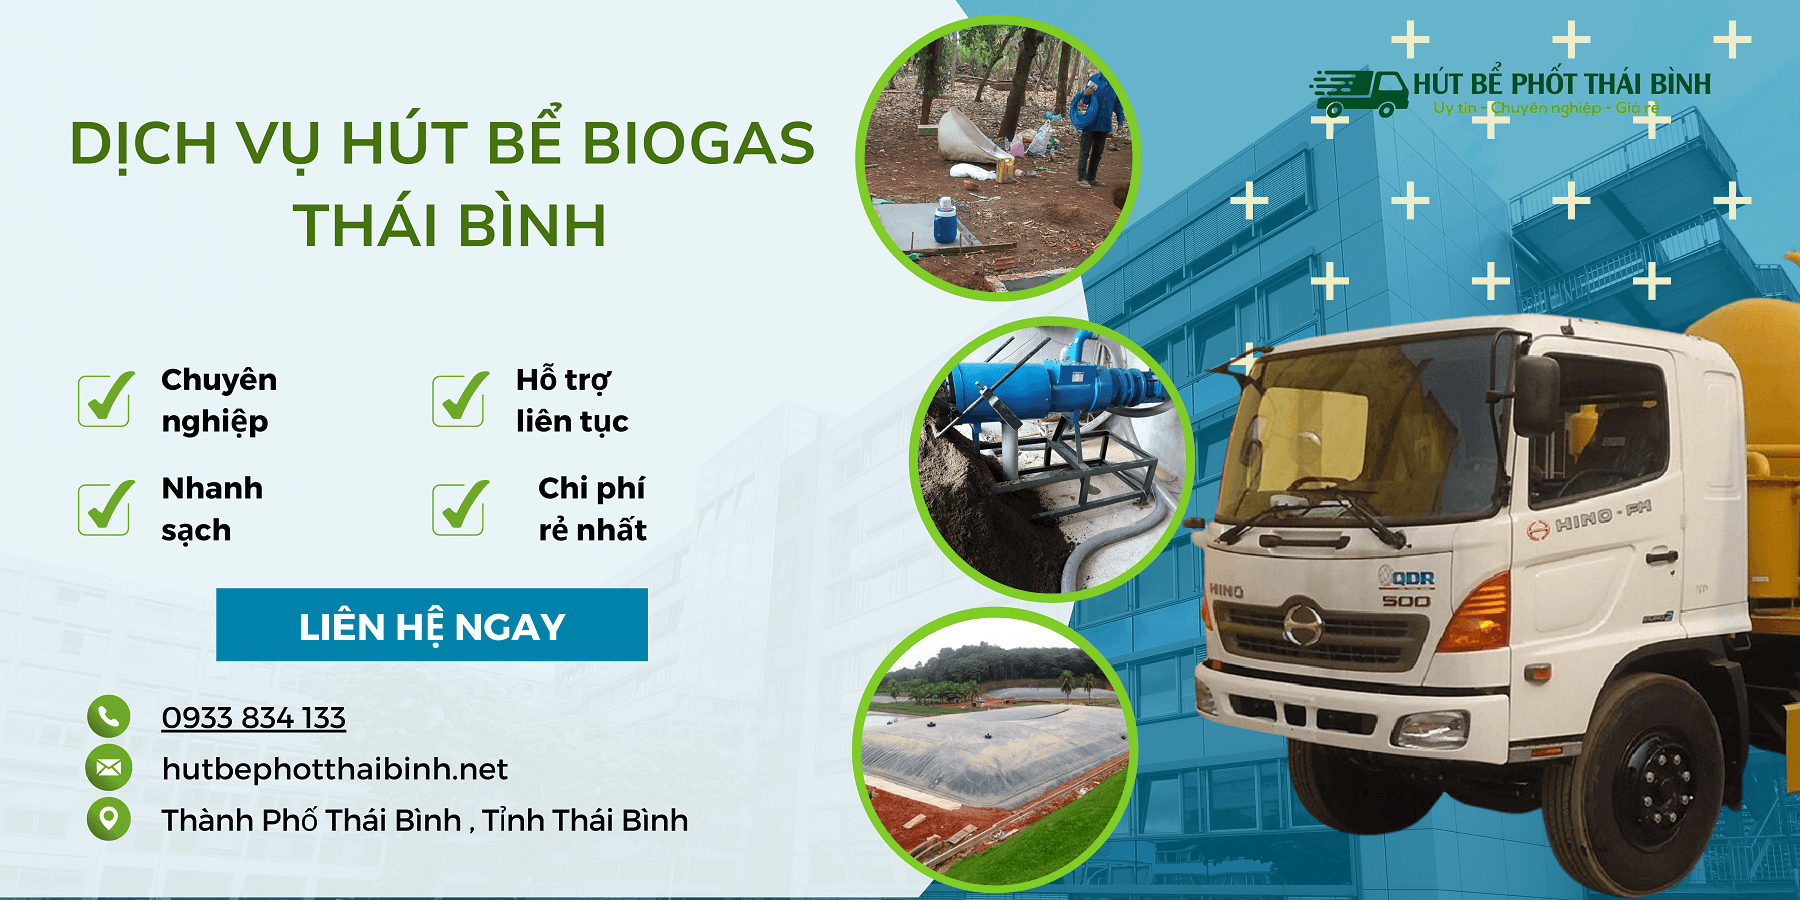 Dịch vụ hút bể biogas Thái Bình nhanh chóng, giá rẻ nhất